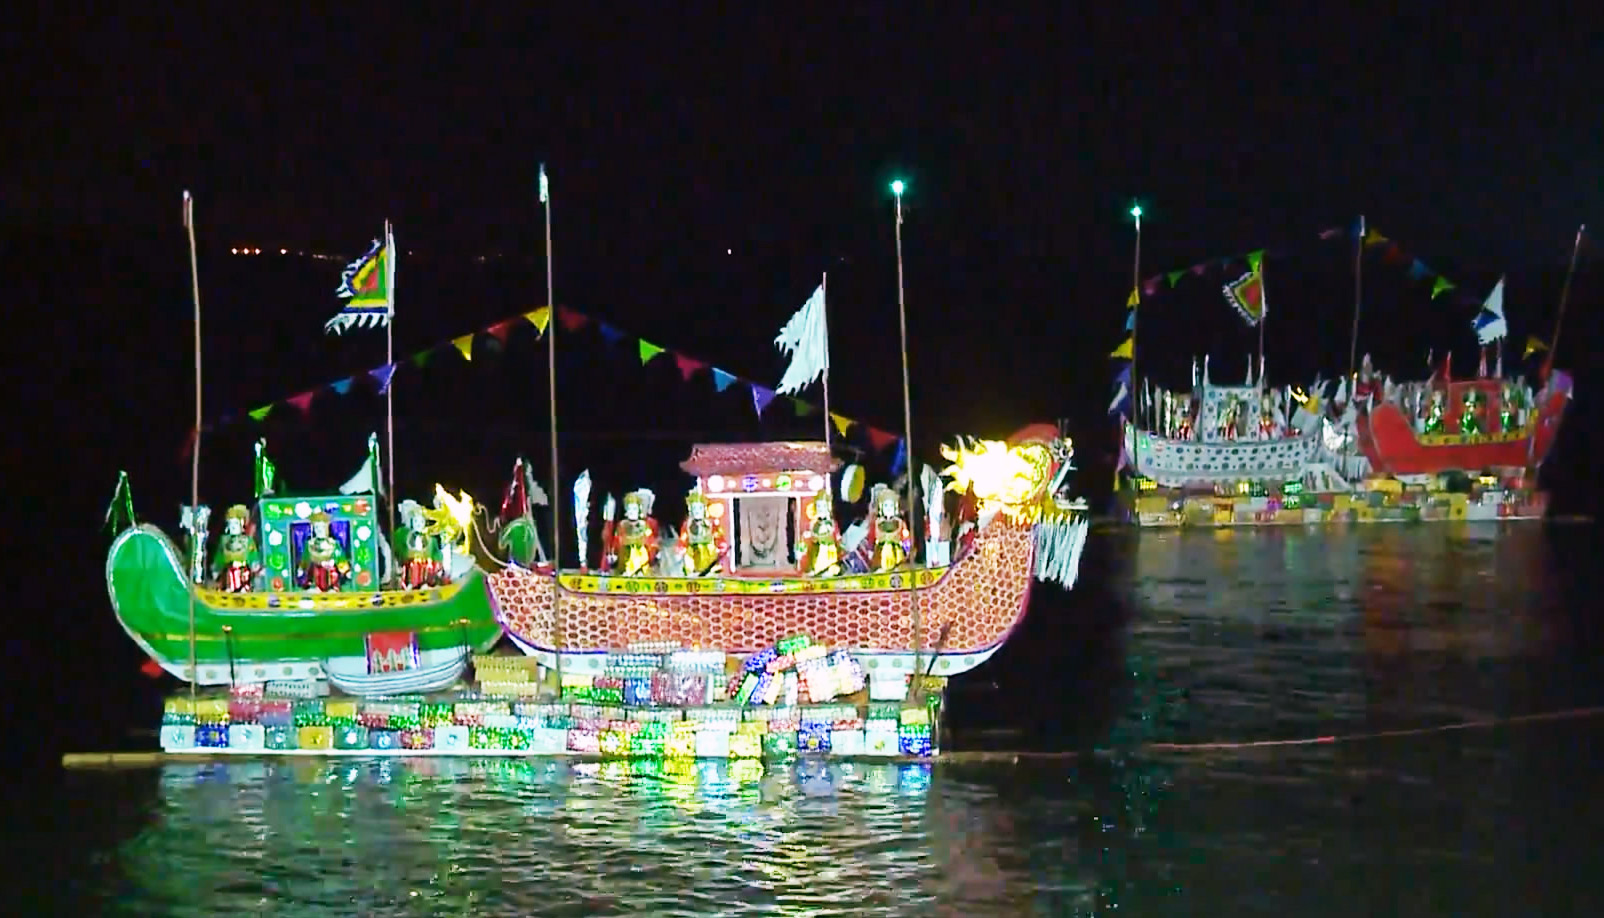 Thức đến 2 giờ sáng để xem thuyền giấy khổng lồ cúng lễ Nam Hải Thần Vương - 6